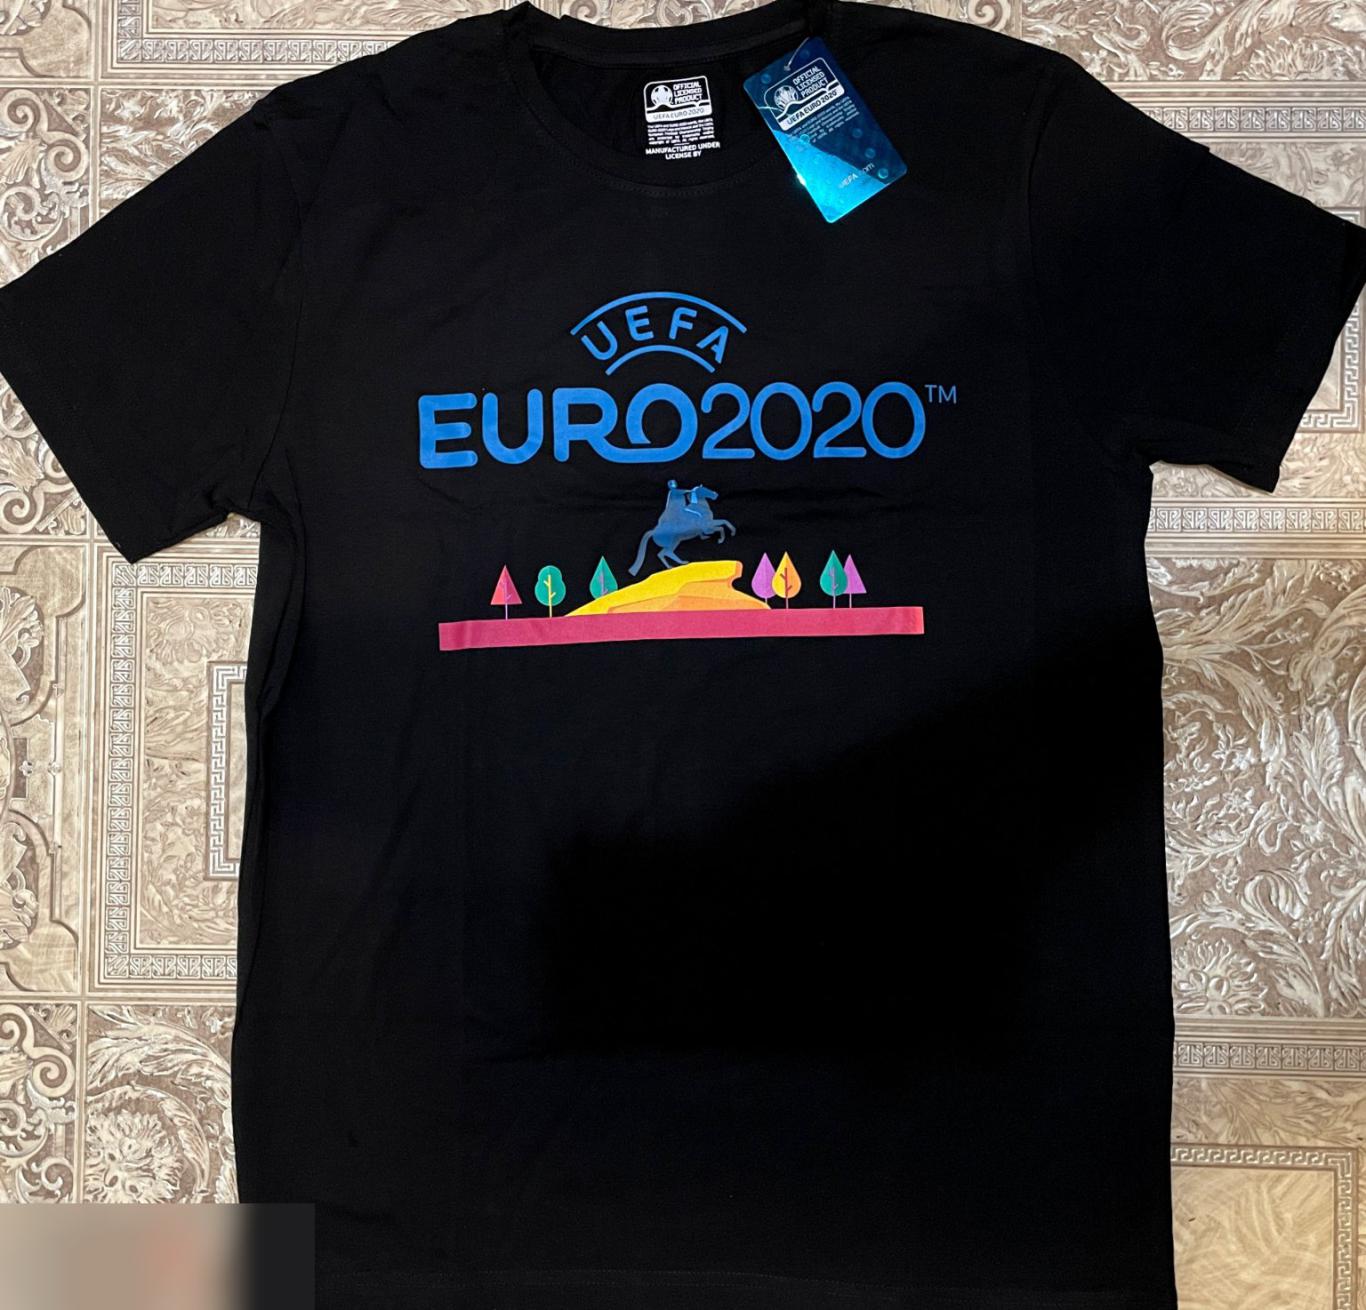 ОПТОВЫЙ ЛОТ! 100 мужских футболок ЕВРО 2020 (S, M). 5